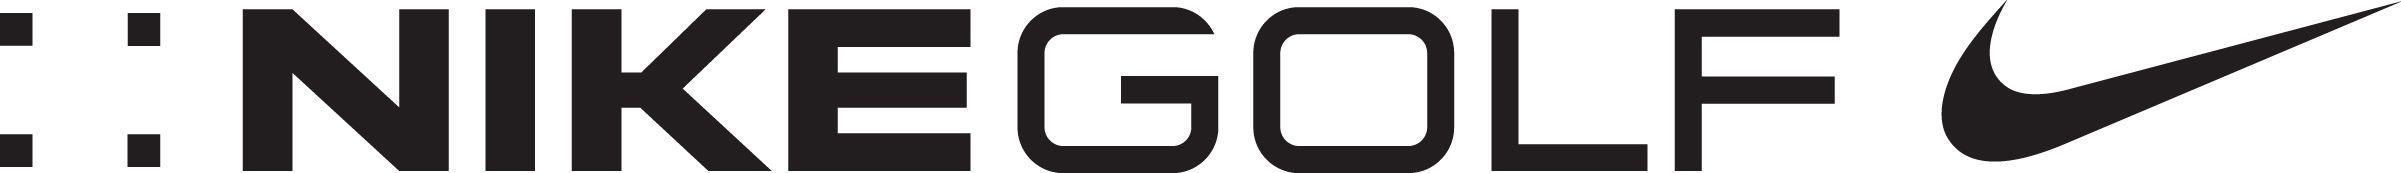 Nike Golf Logo - nike-golf-logo-21 | Flagstick.com